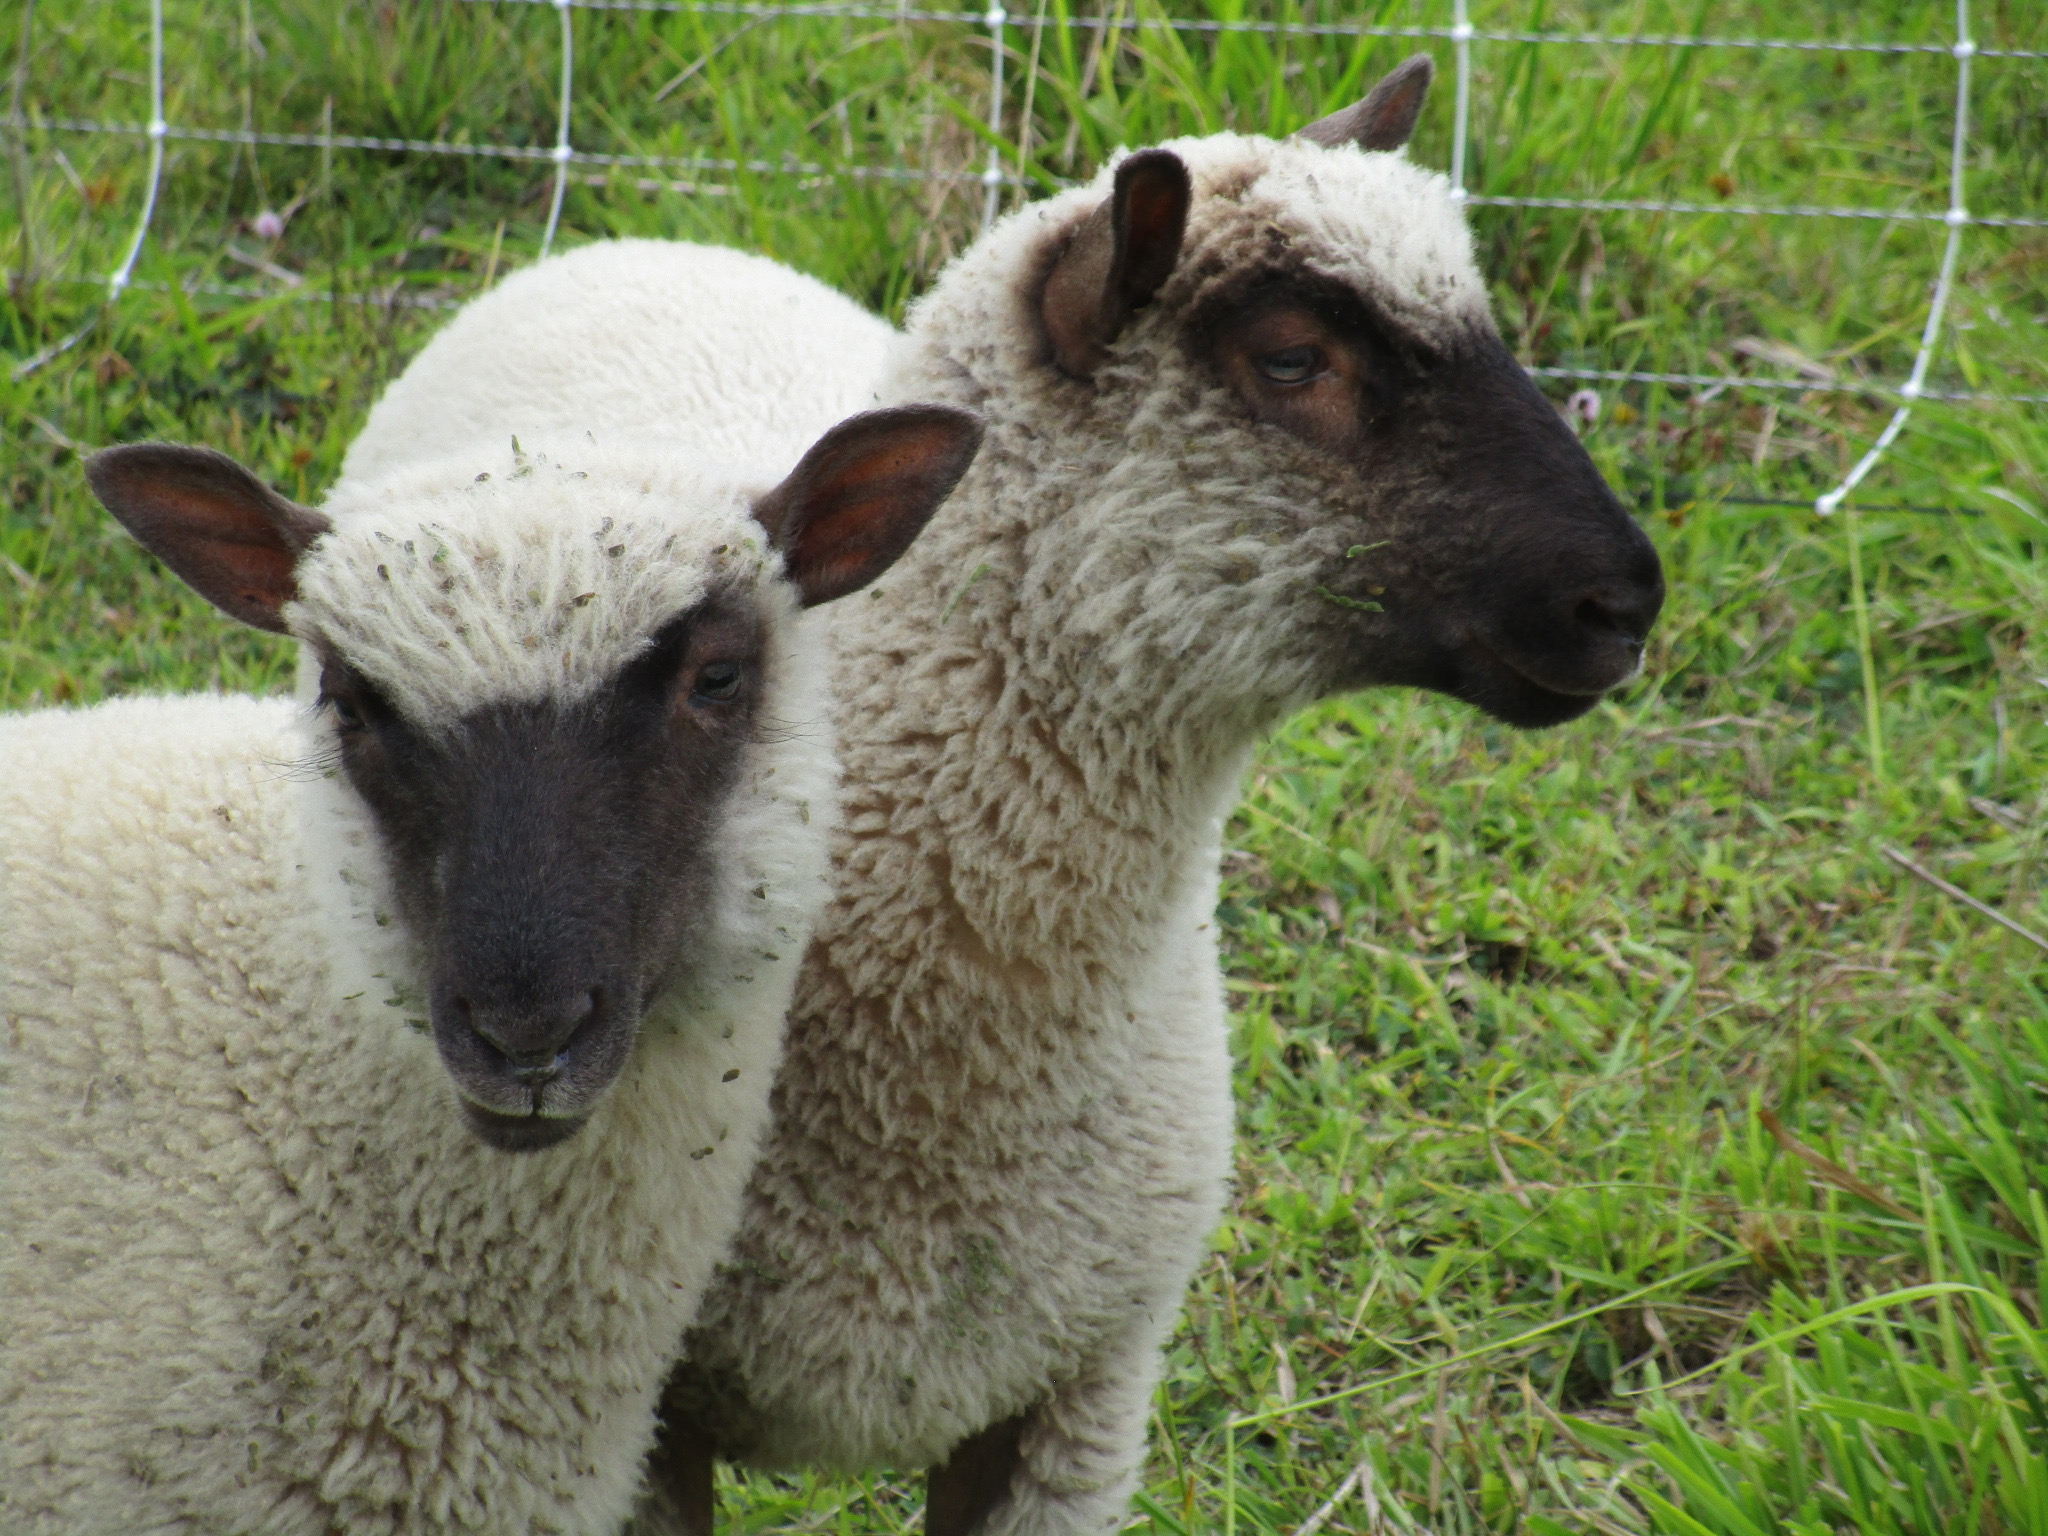 Twin lambs